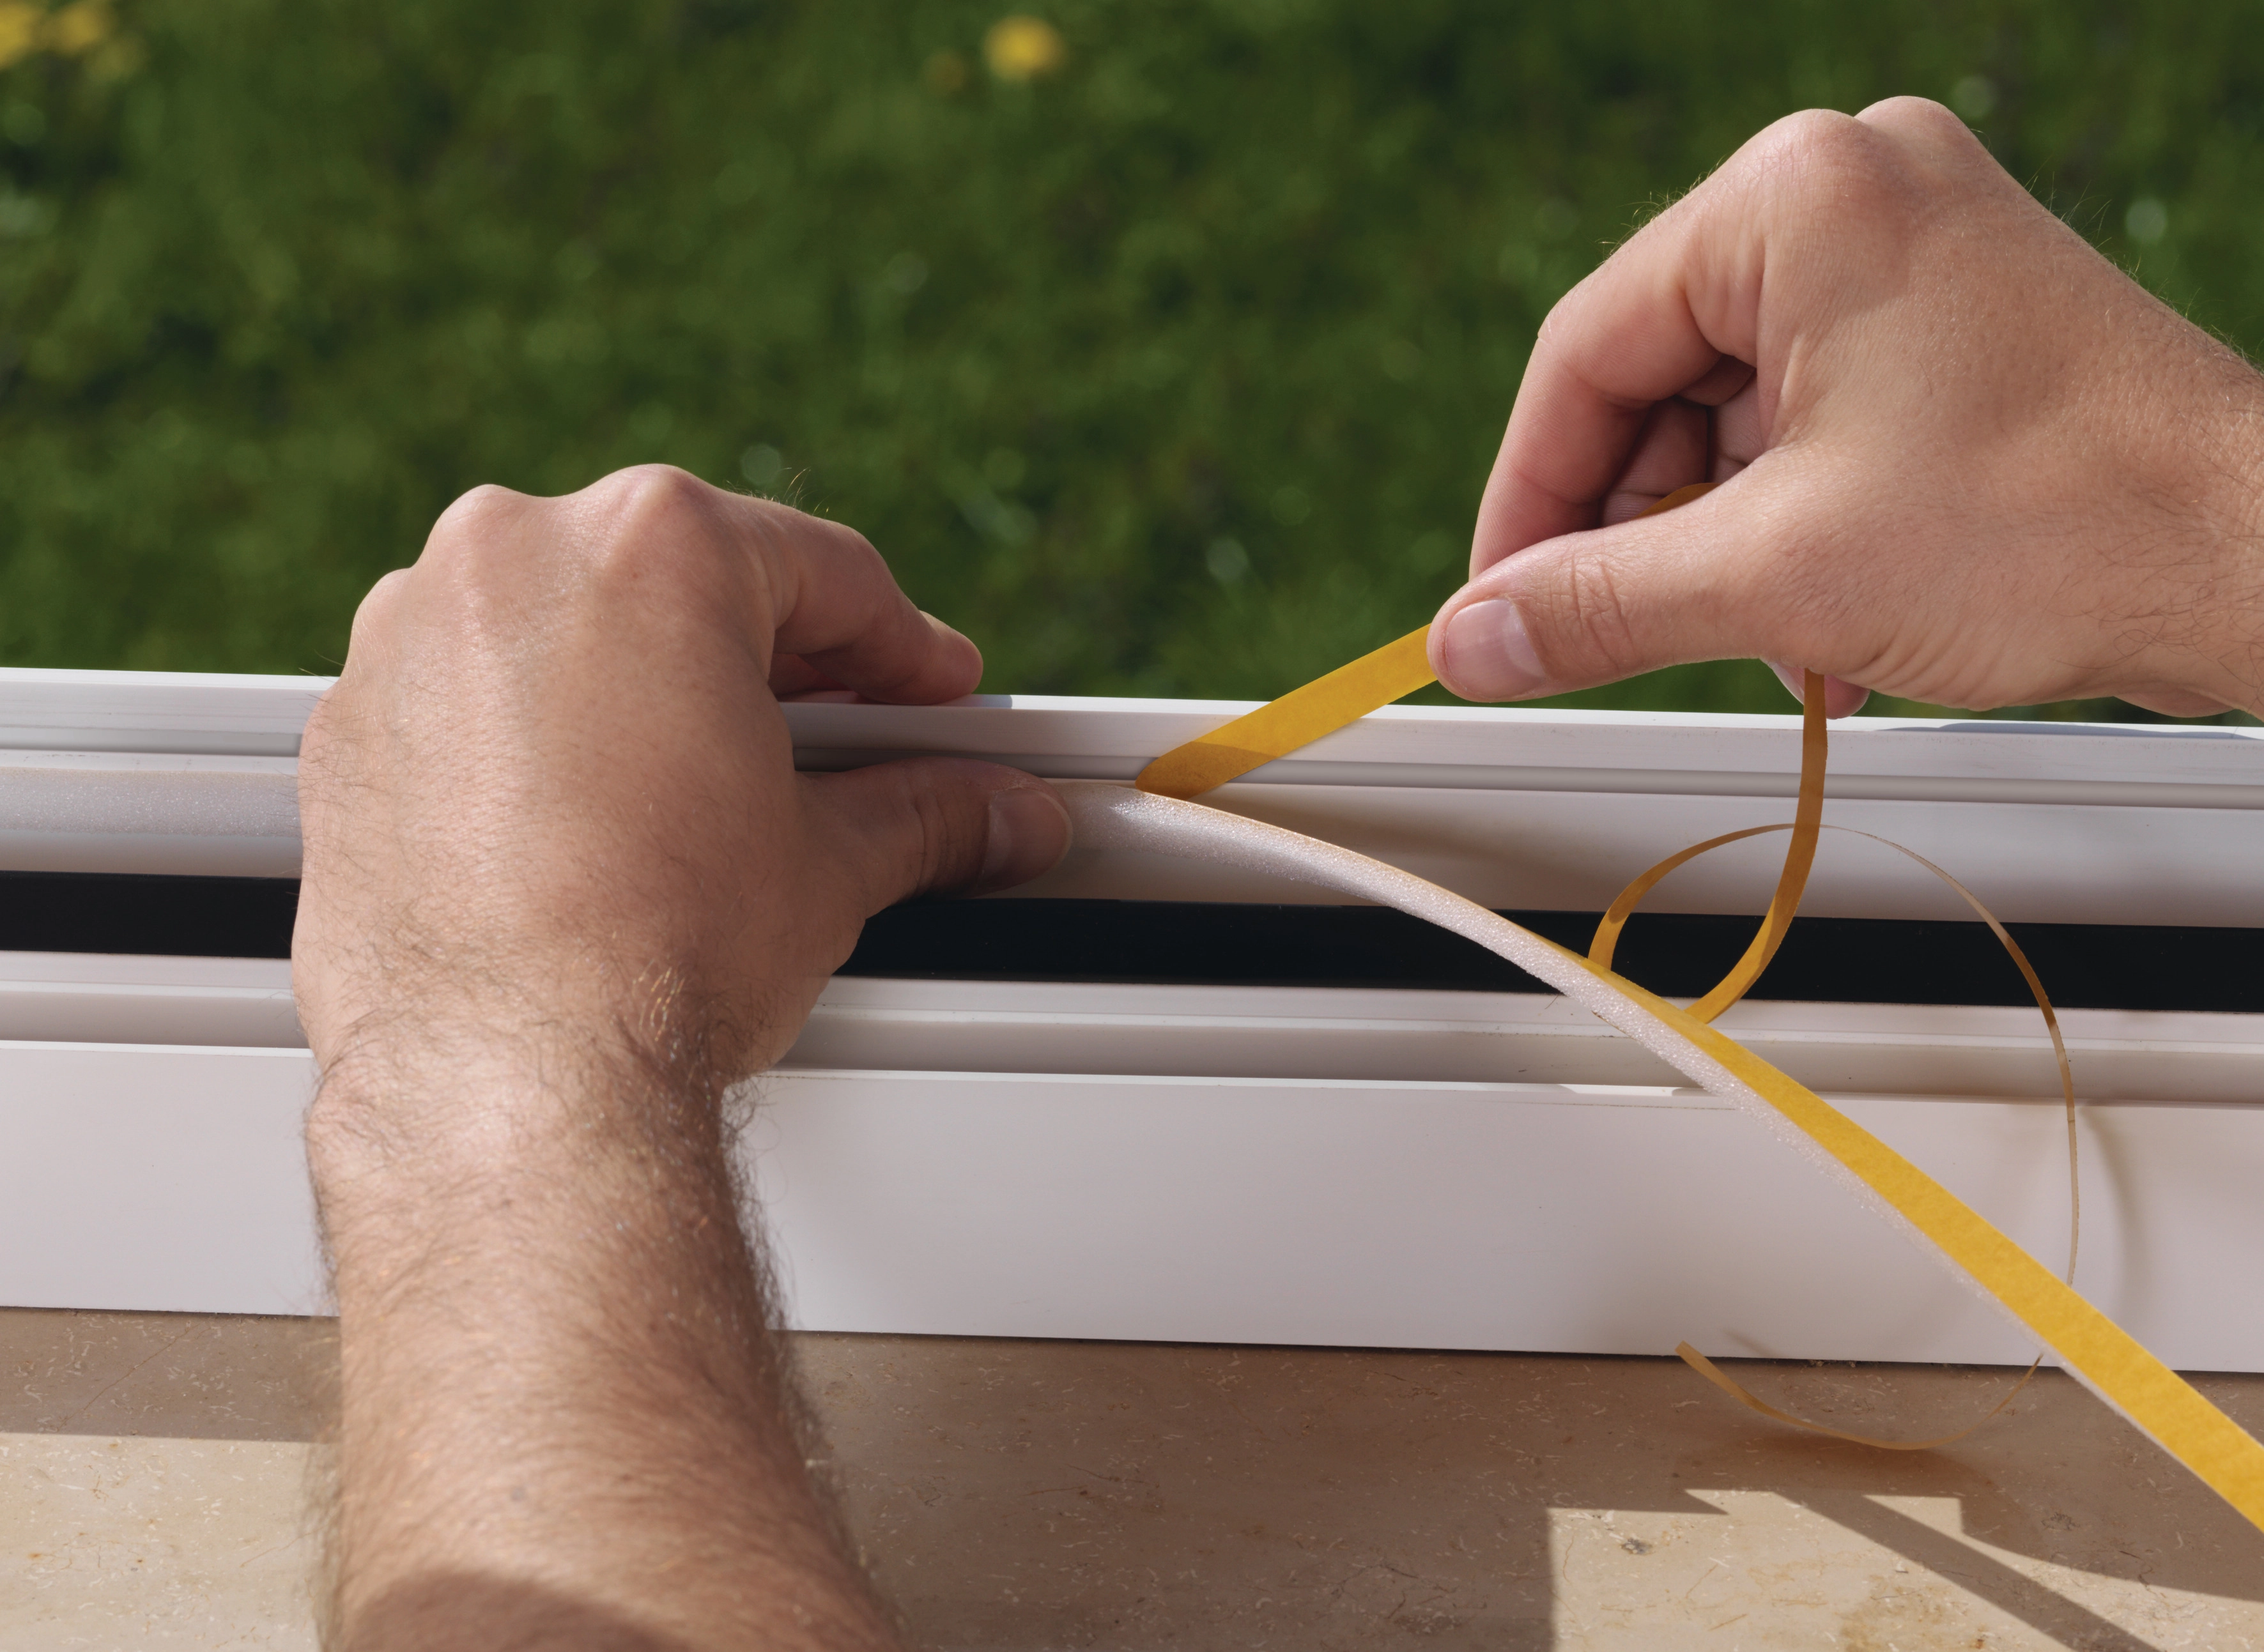 Selbstklebendes Dichtband für Fenster und Türen, weiß (4,5 cm x 5